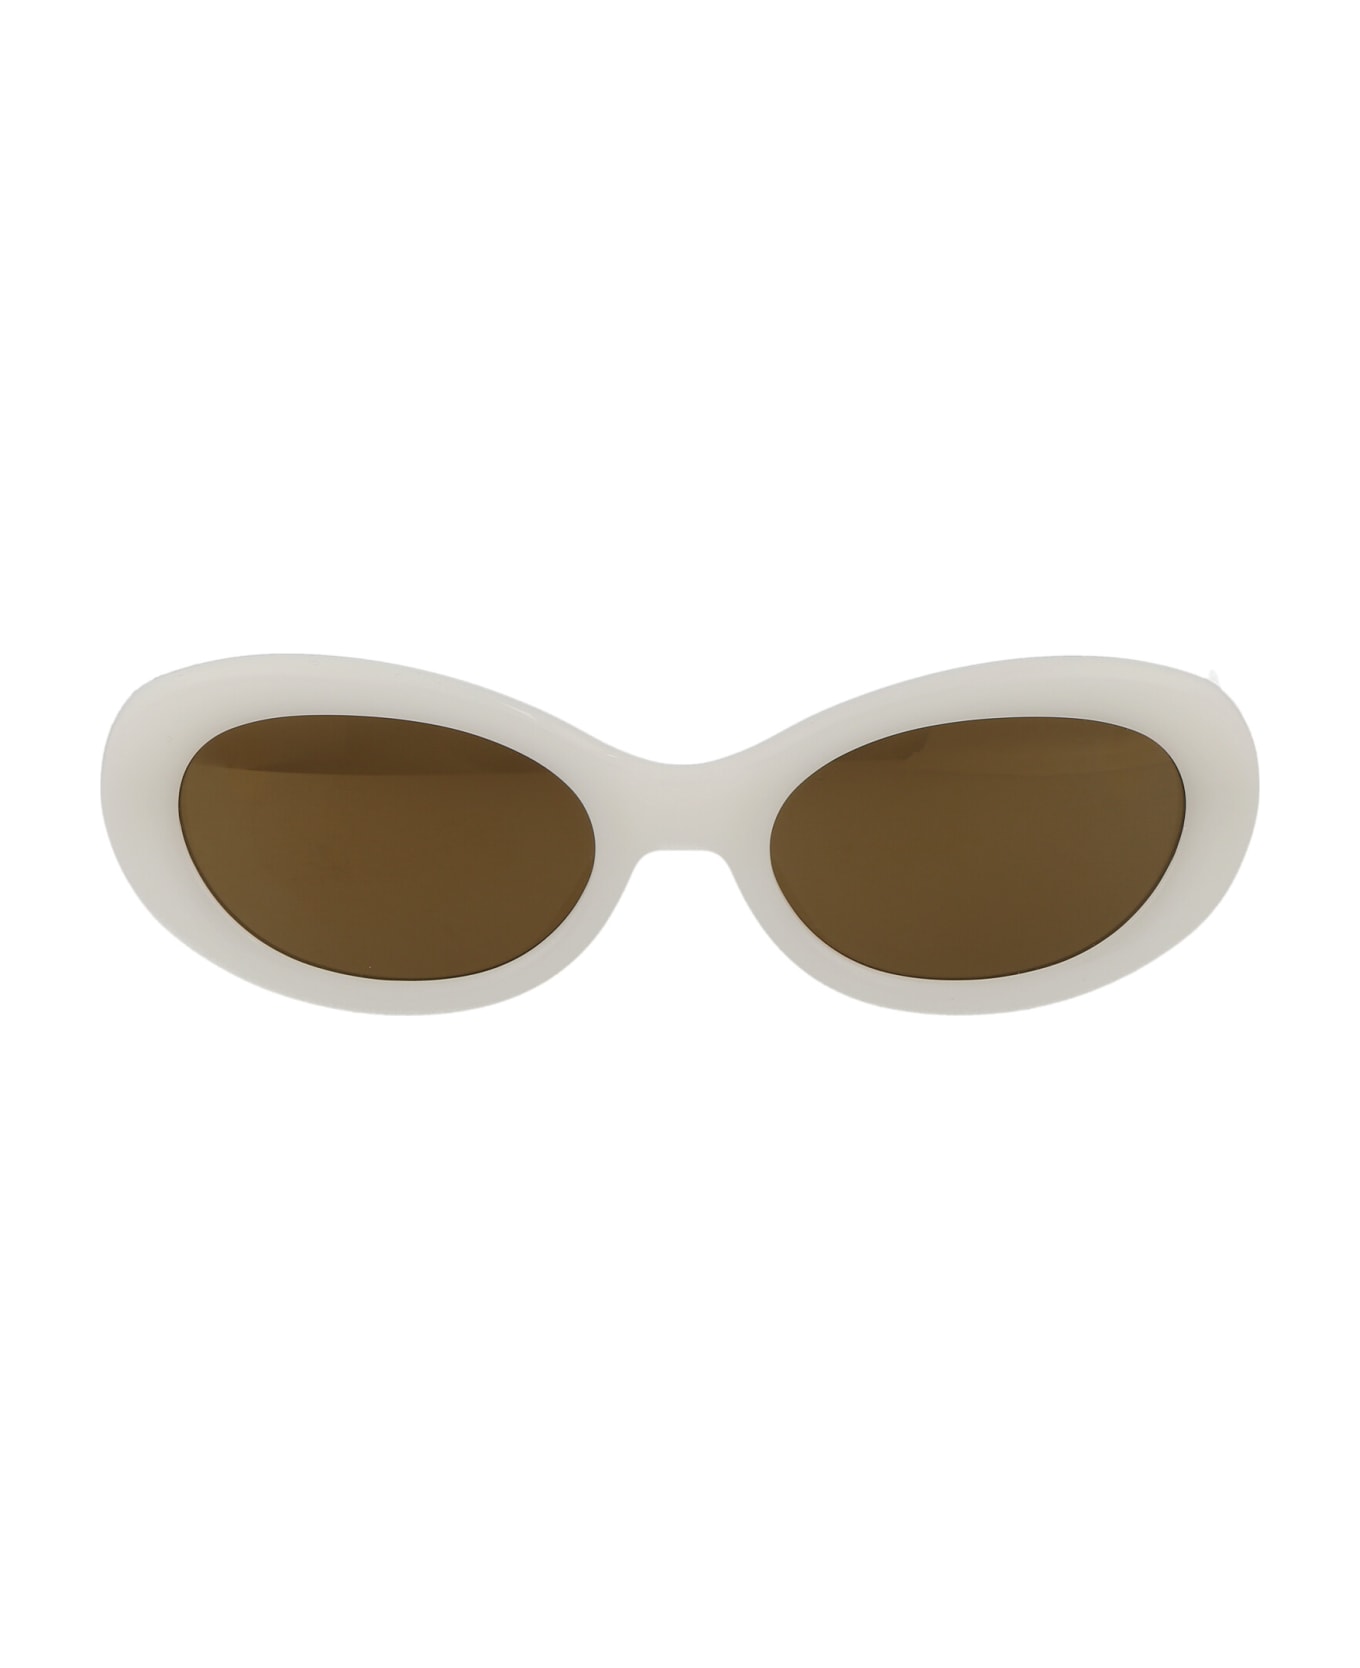 Dries Van Noten Dvn211c7sun Sunglasses - WHITE/SILVER/BROWNMIRROR サングラス